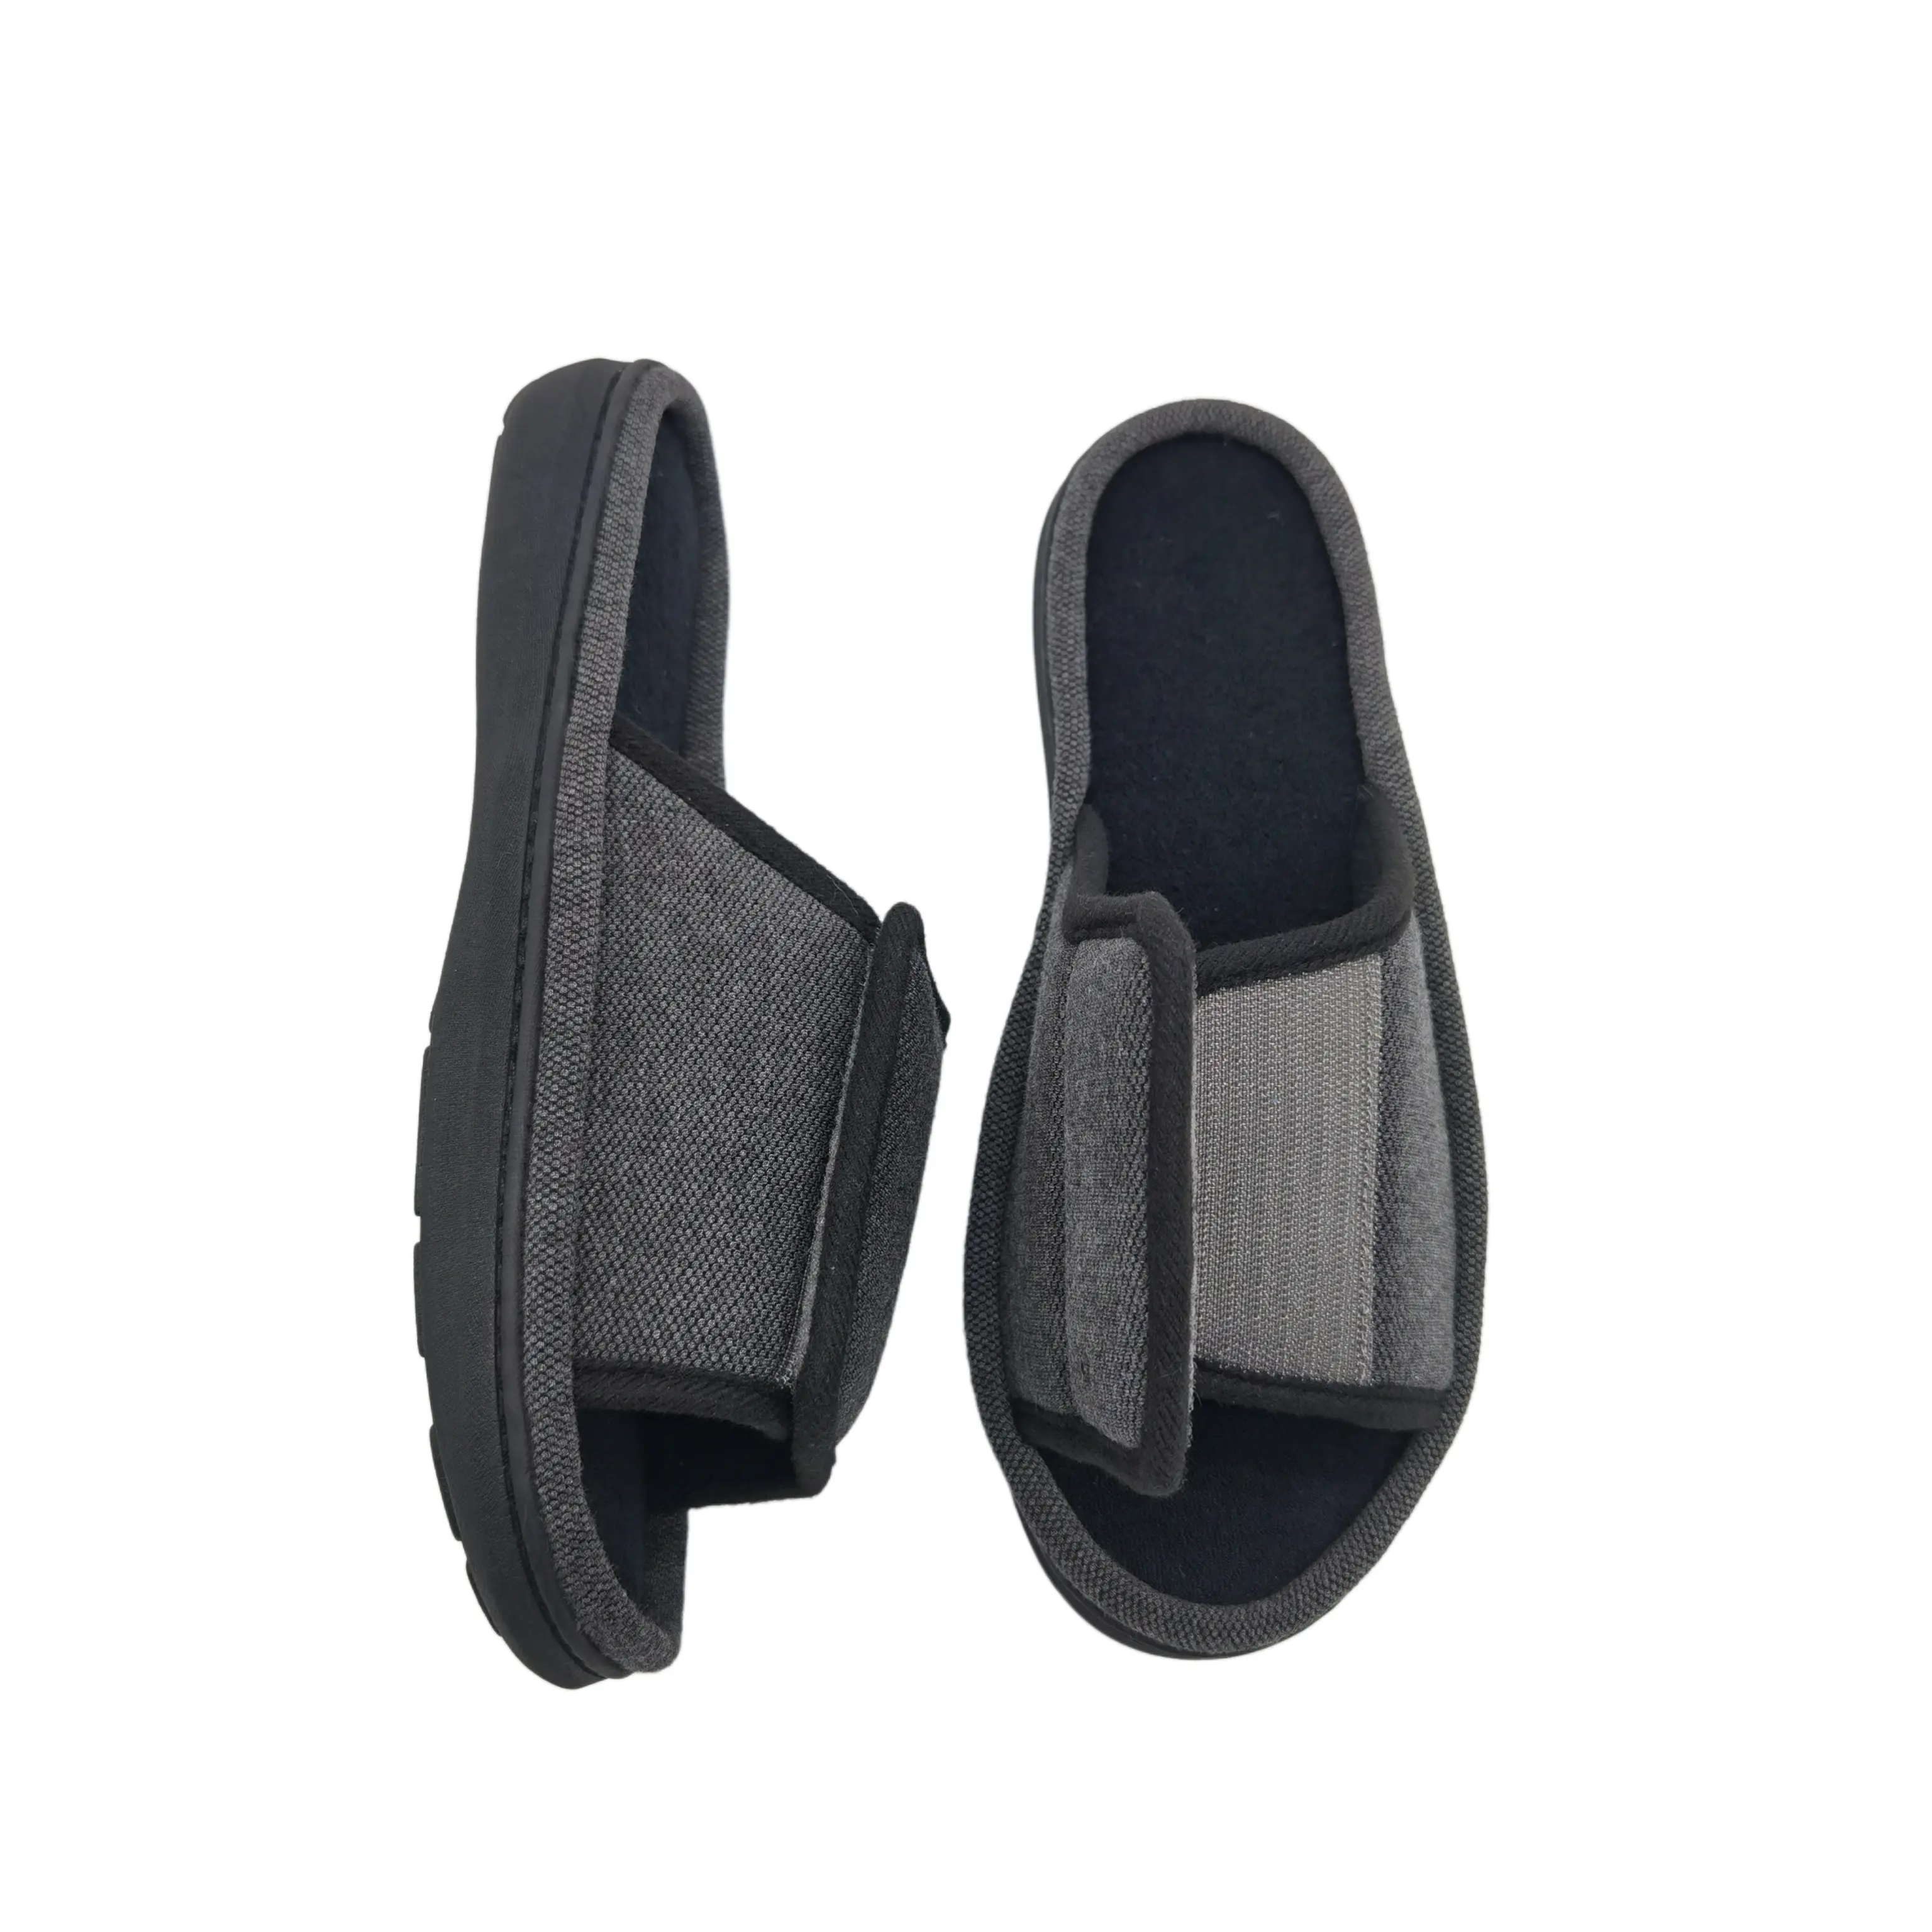 Personalizzato OEM pantofole da interno una fascia Open Toe leggero TPR suola in cotone morbido per la casa pantofole per le donne e gli uomini